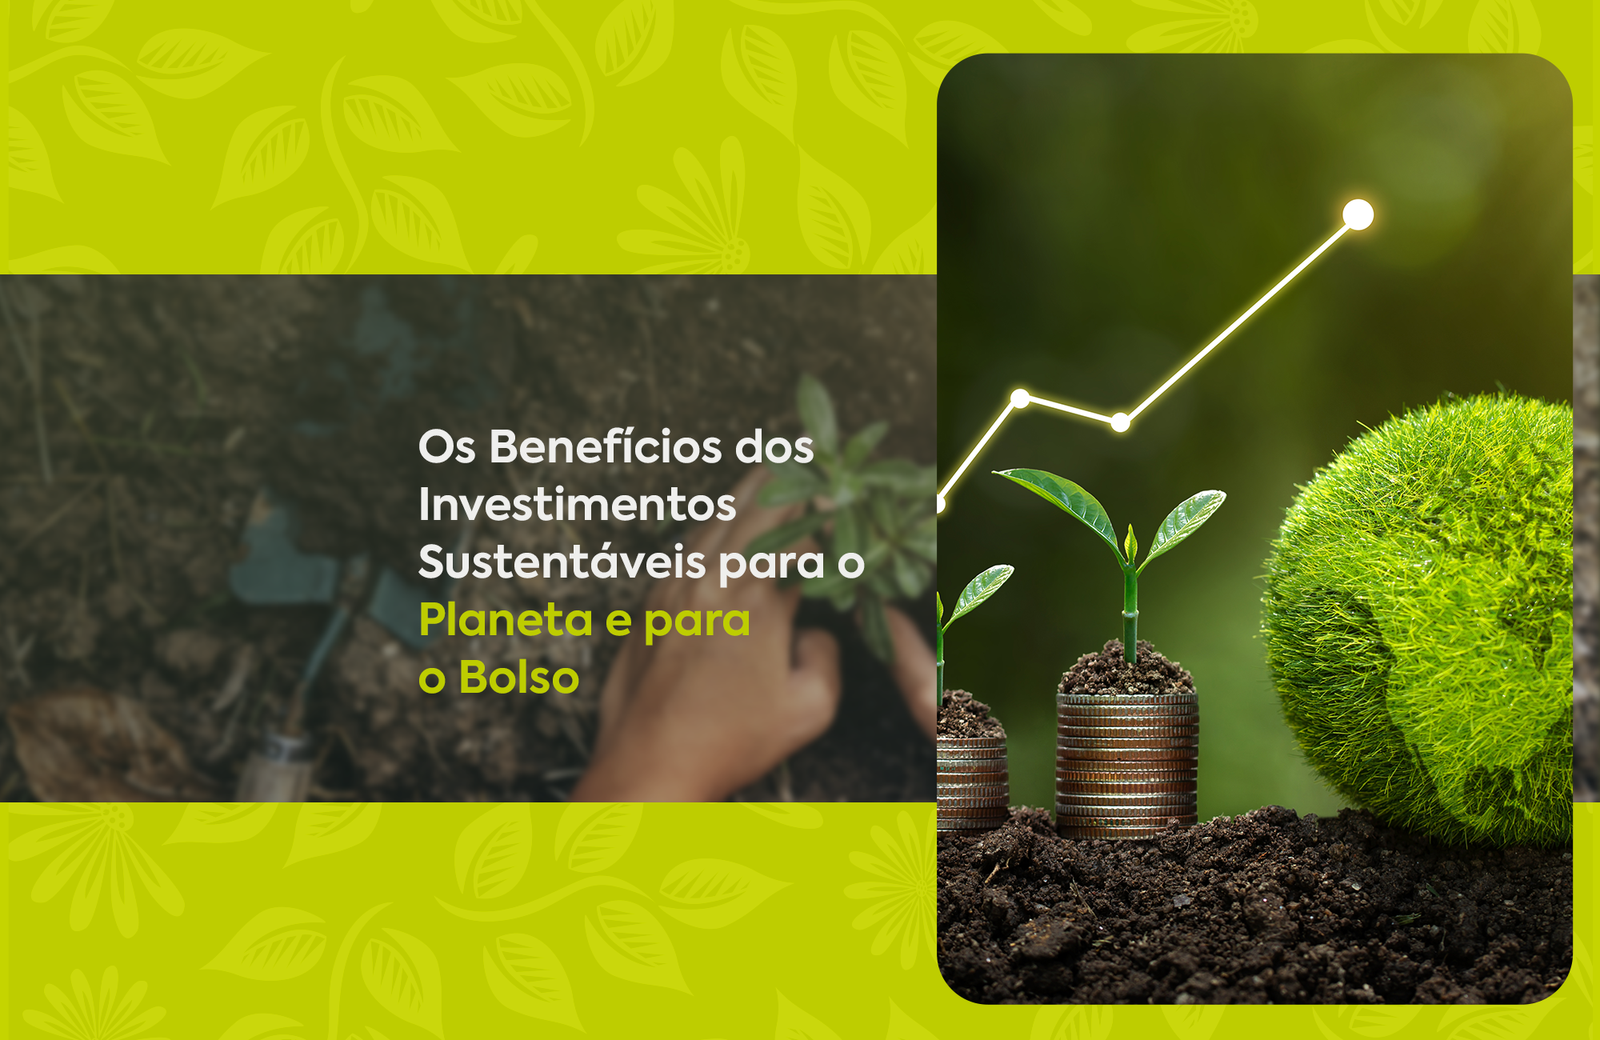 Os Benefícios dos Investimentos Sustentáveis para o Planeta e para o Bolso